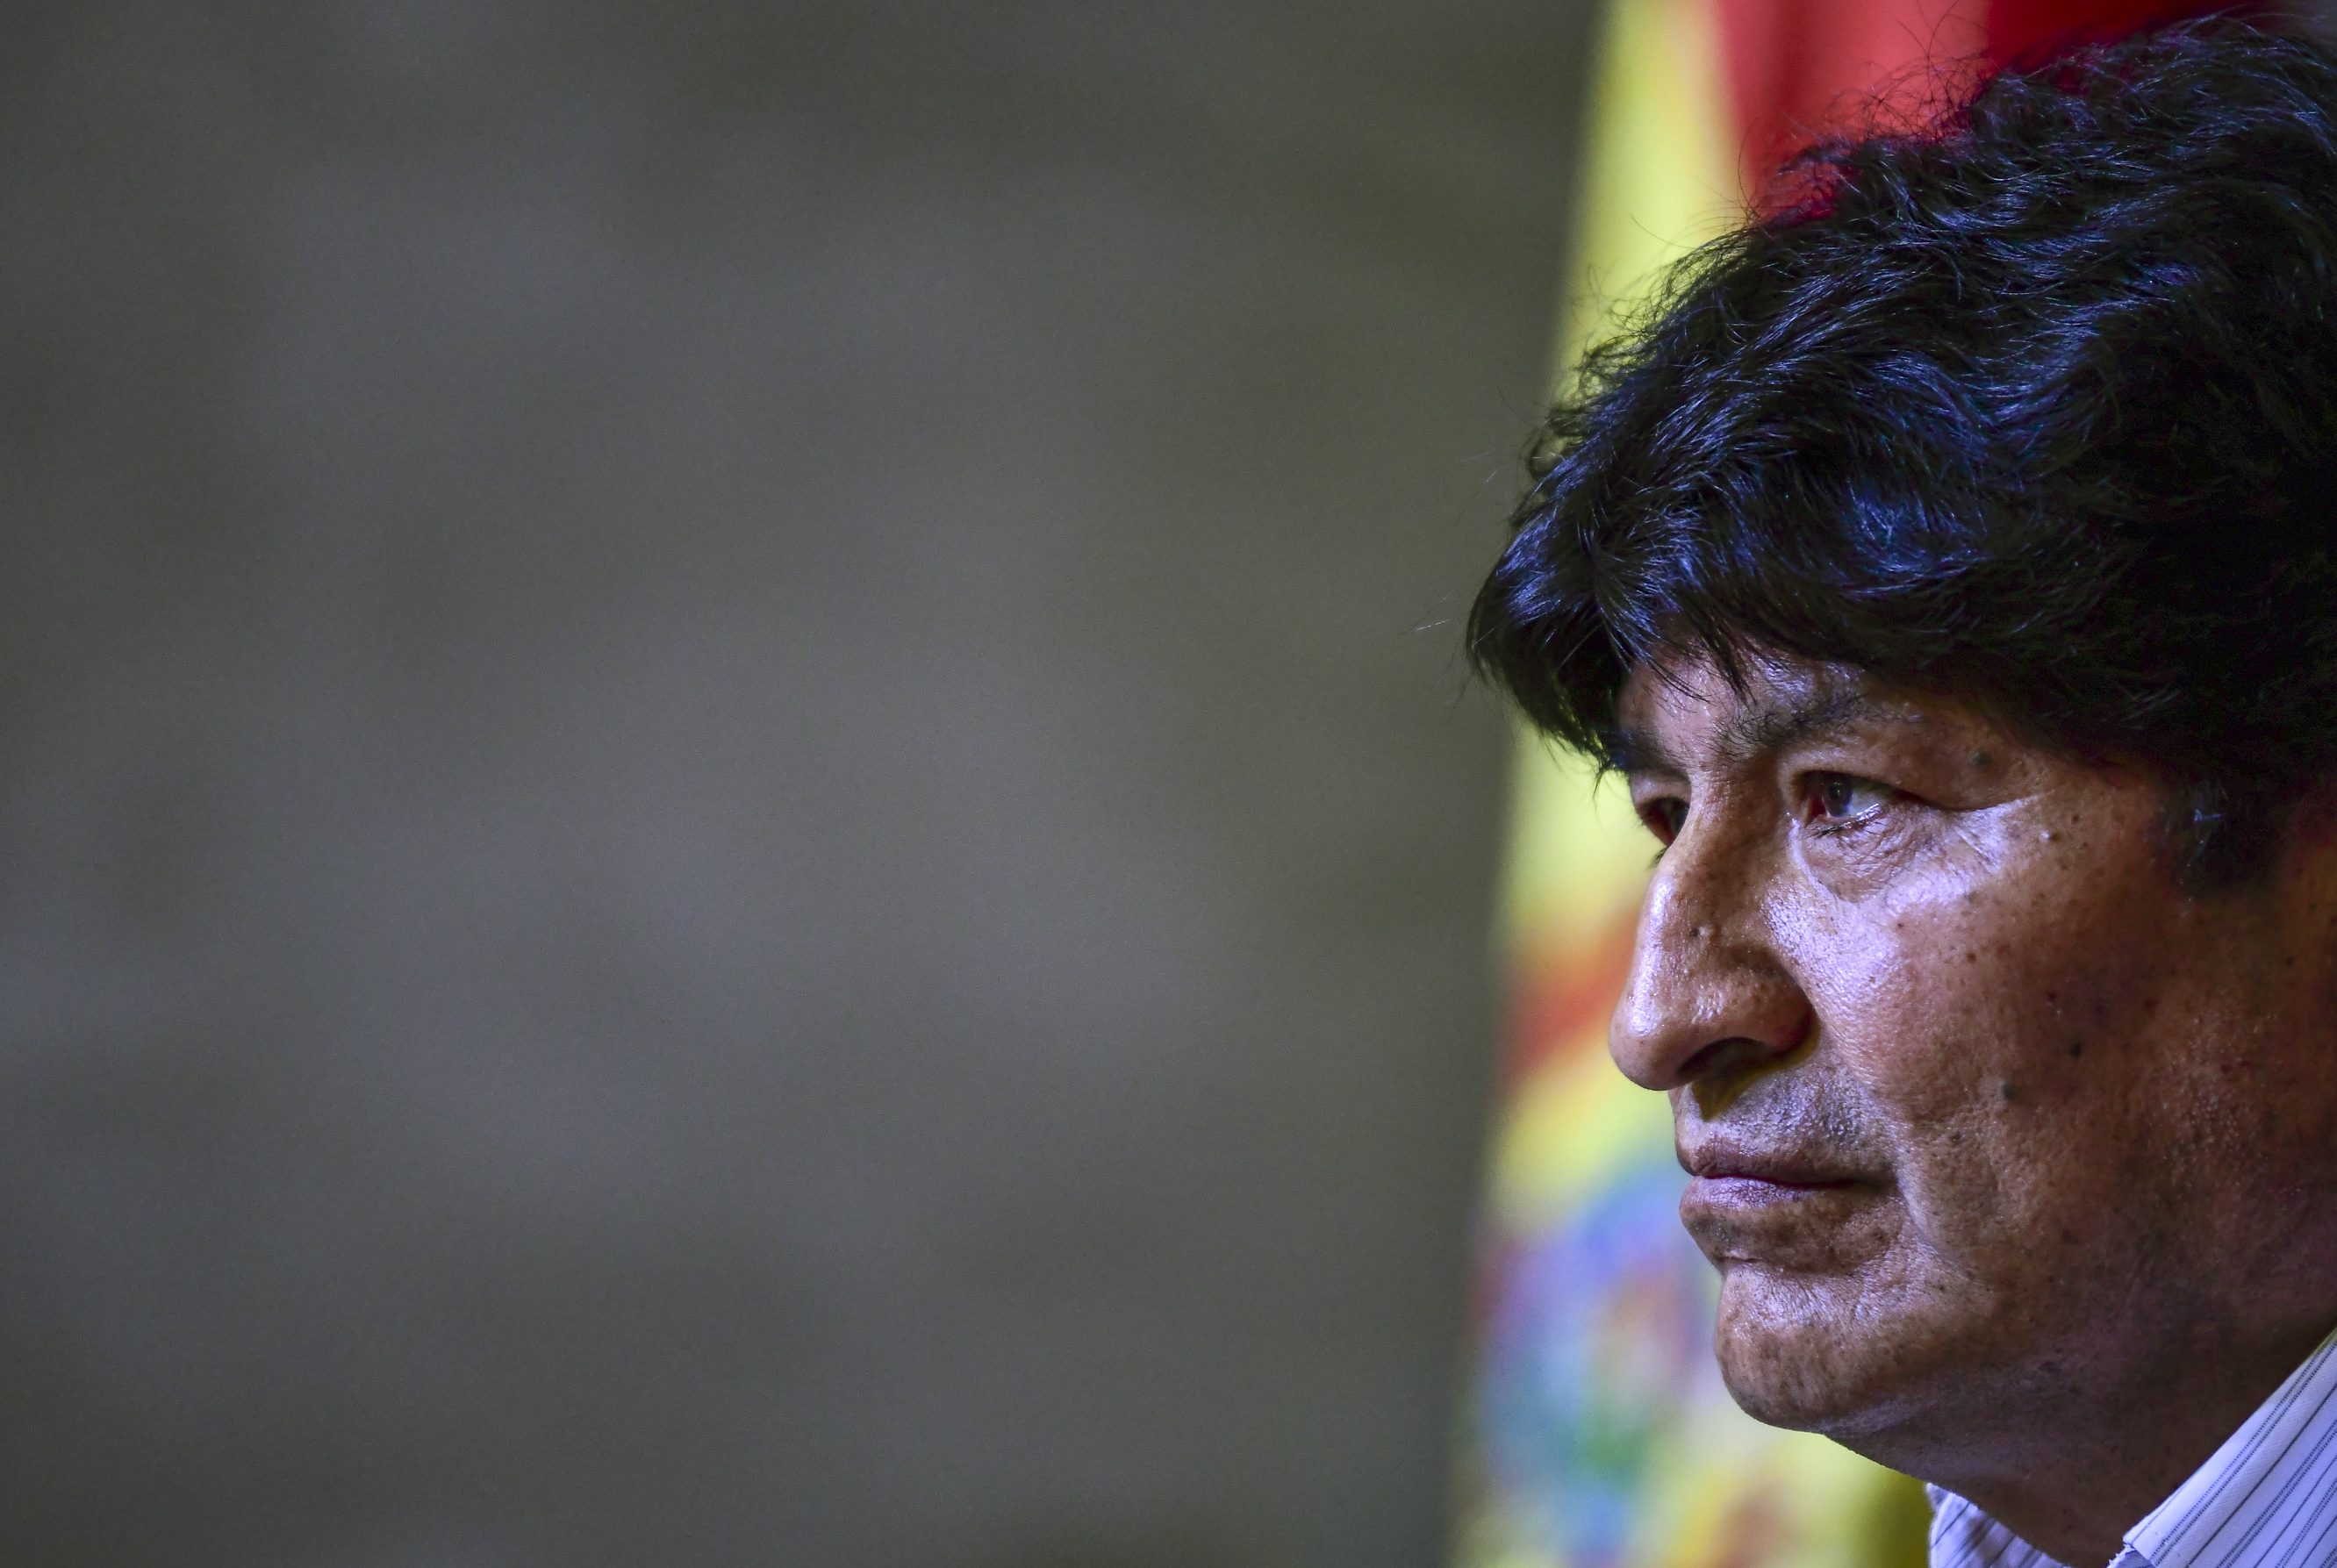 “Mi vida se volvió una pesadilla”: Una joven de 19 años denuncia que fue obligada a decir que tuvo una relación con Evo Morales